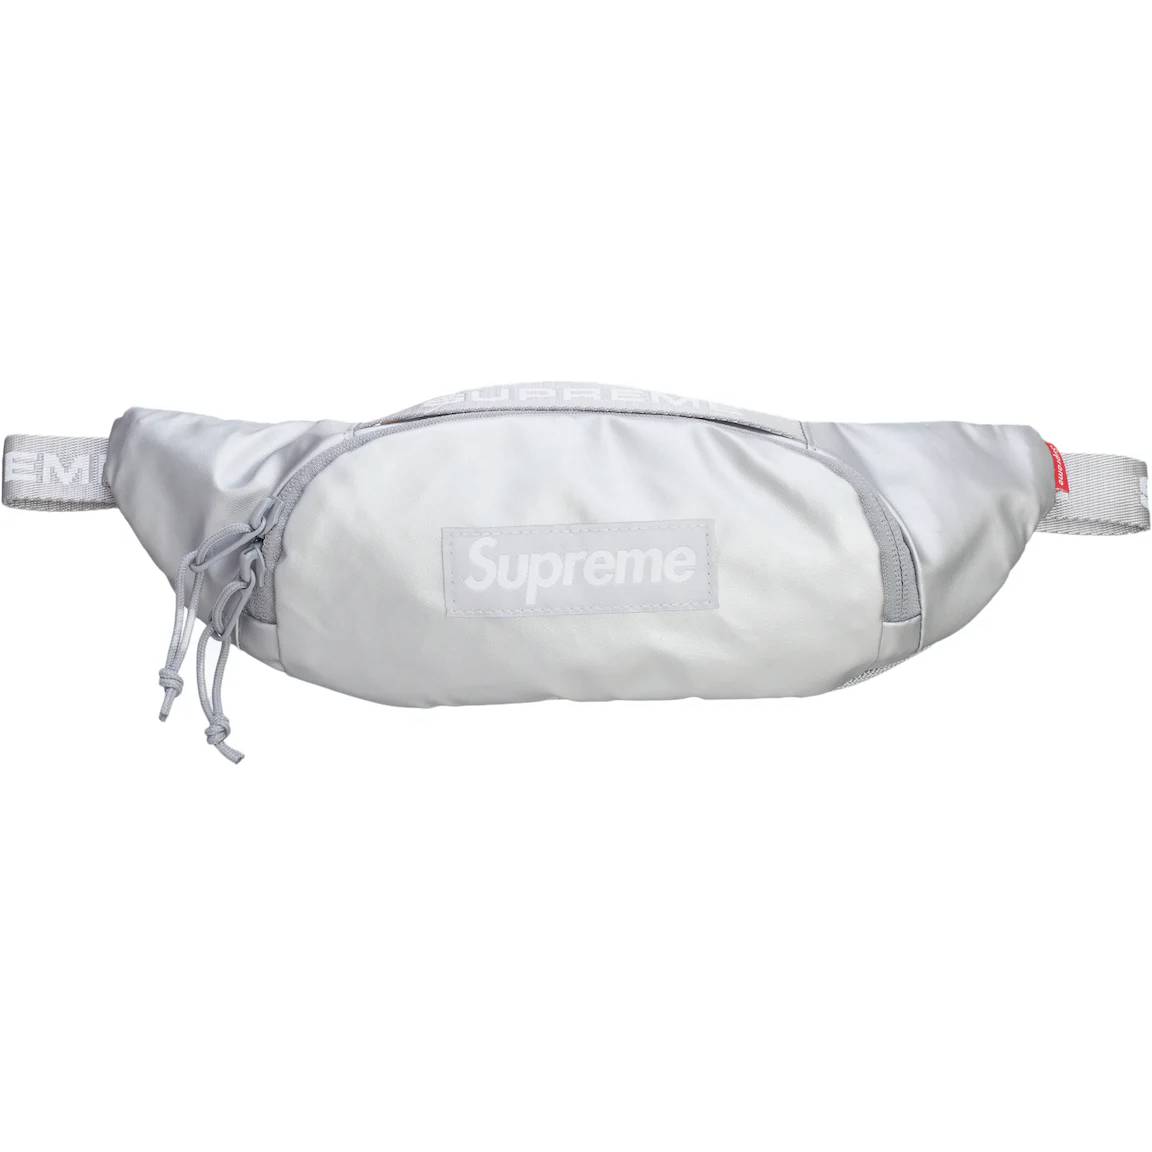 Supreme Small Waist Bag Silver